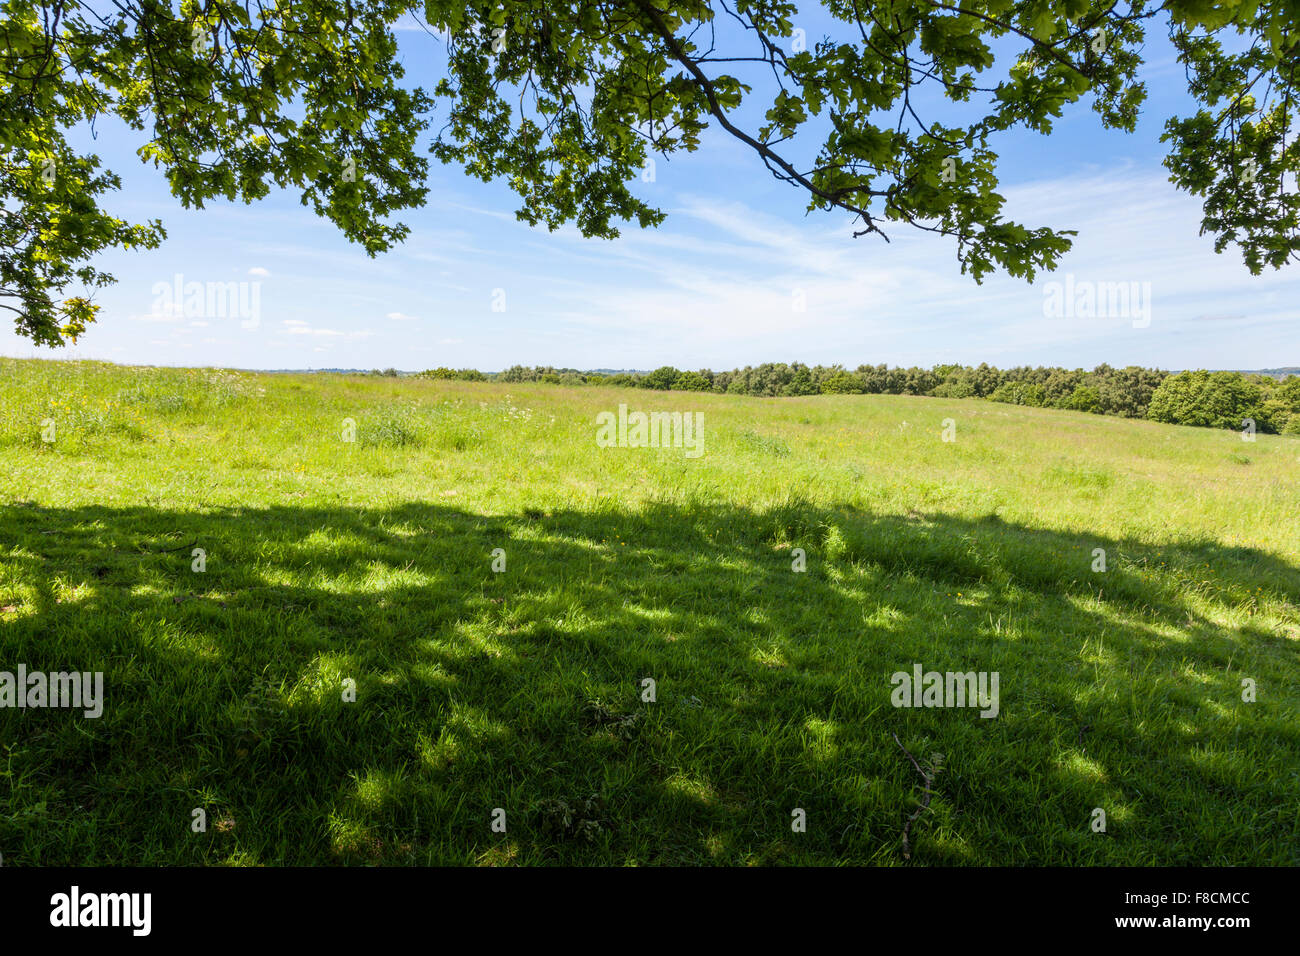 Allgemeine Ansicht eines Feldes und Bäume in der englischen Landschaft im Sommer von der Schatten unter einem überhängenden Baum, Nottinghamshire, England gesehen, Großbritannien Stockfoto